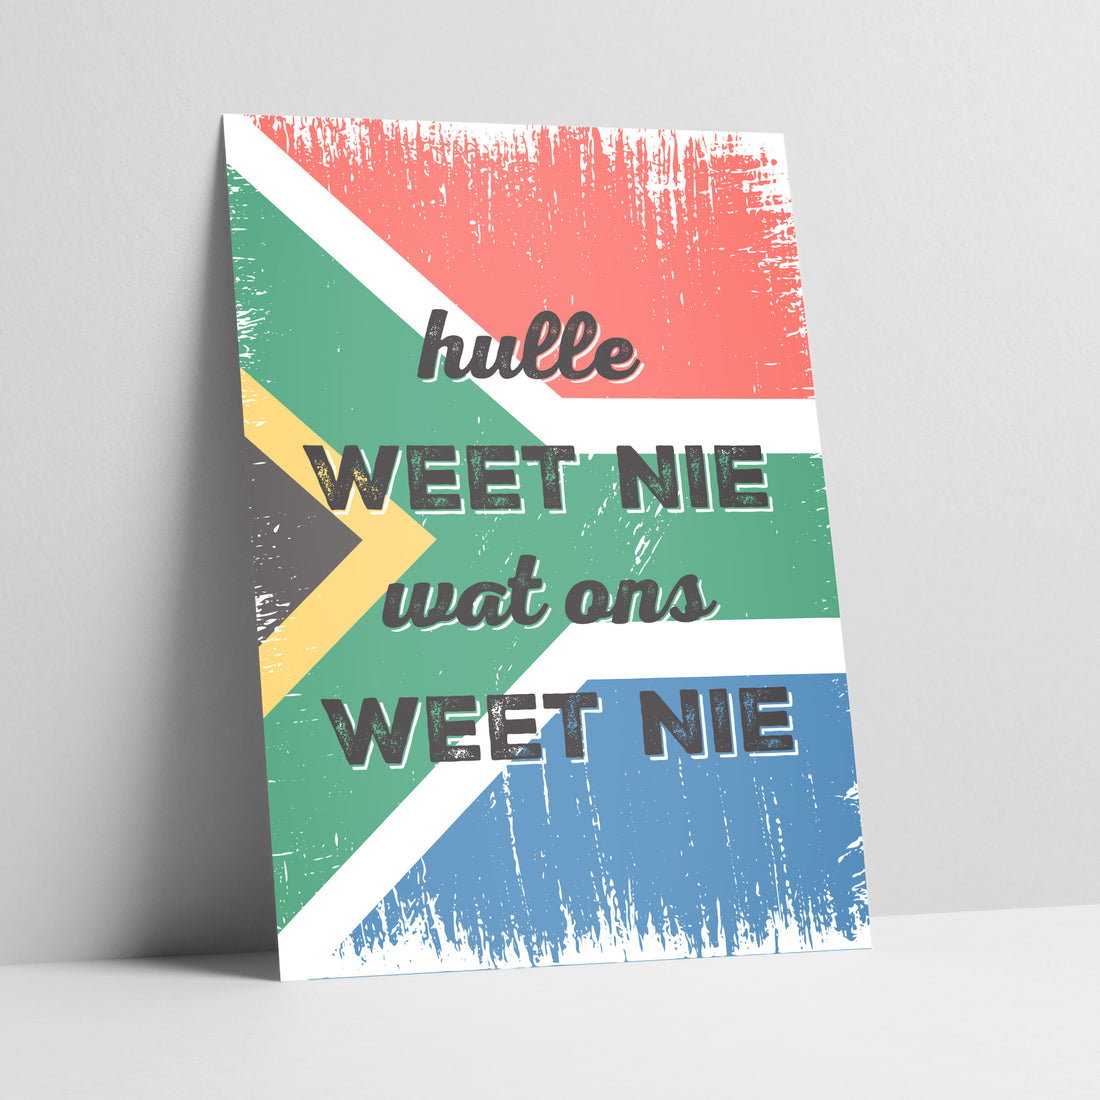 Hulle Weet Nie Wat Ons Weet Nie - South African Flag Typographic Art Print